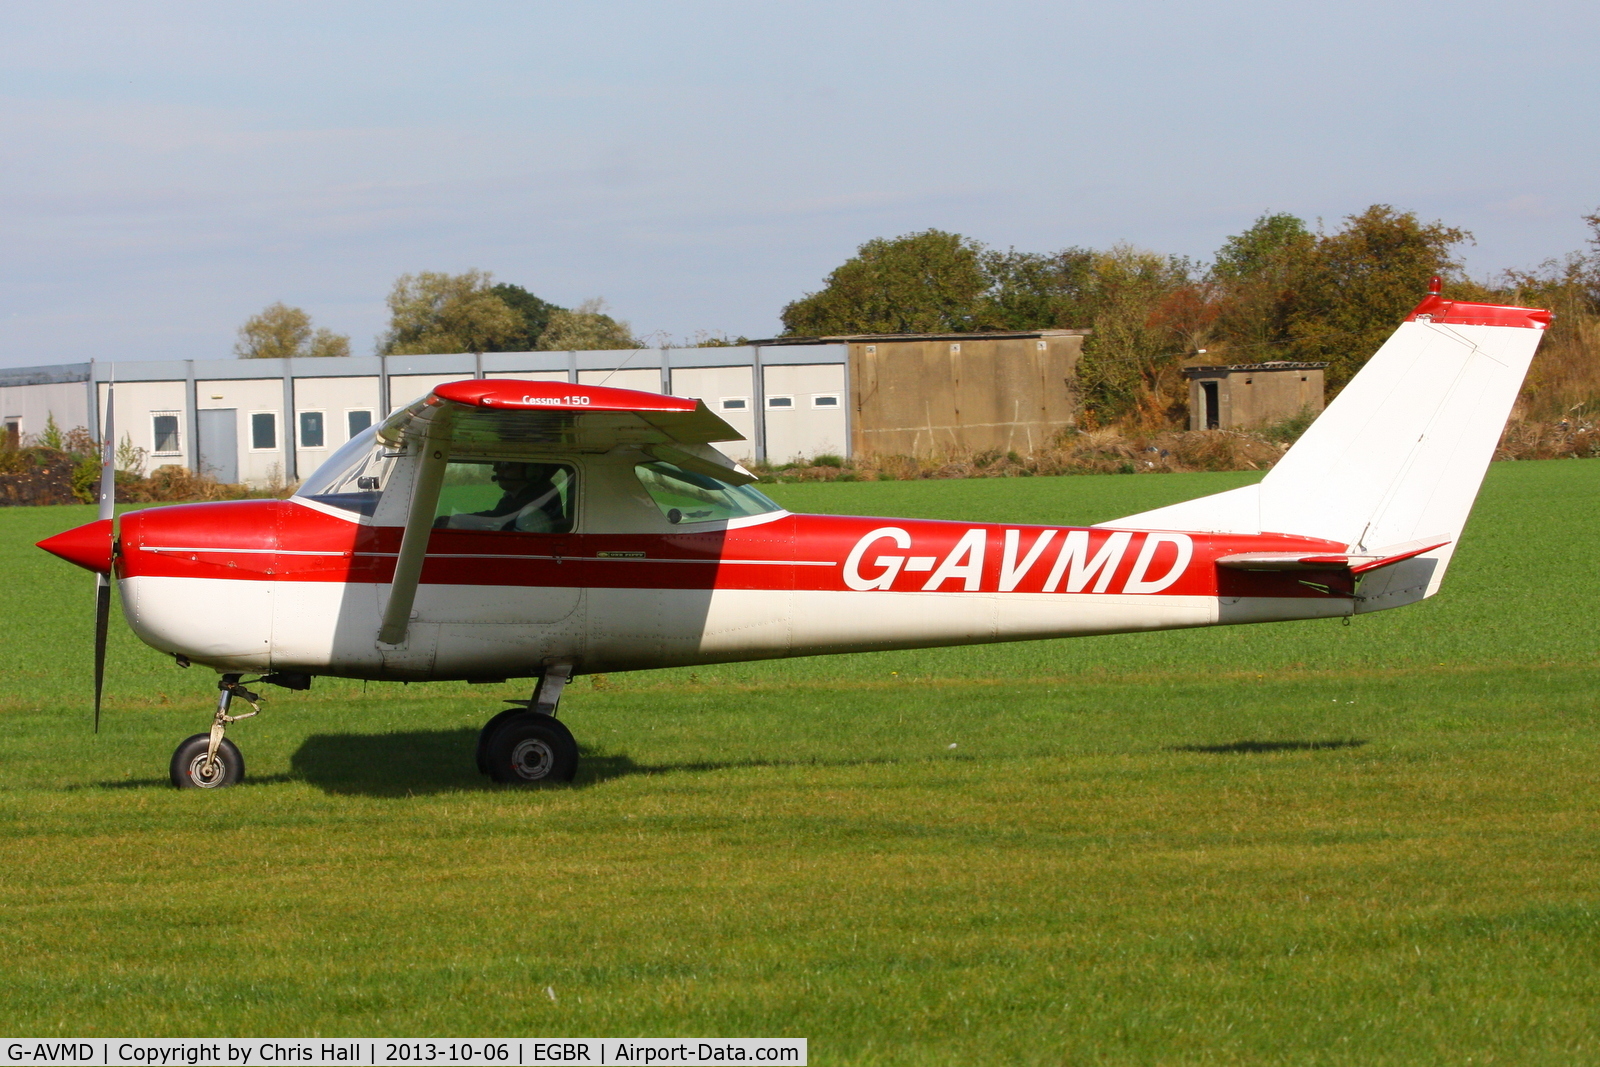 G-AVMD, 1966 Cessna 150G C/N 150-65504, at Breighton's Pre Hibernation Fly-in, 2013